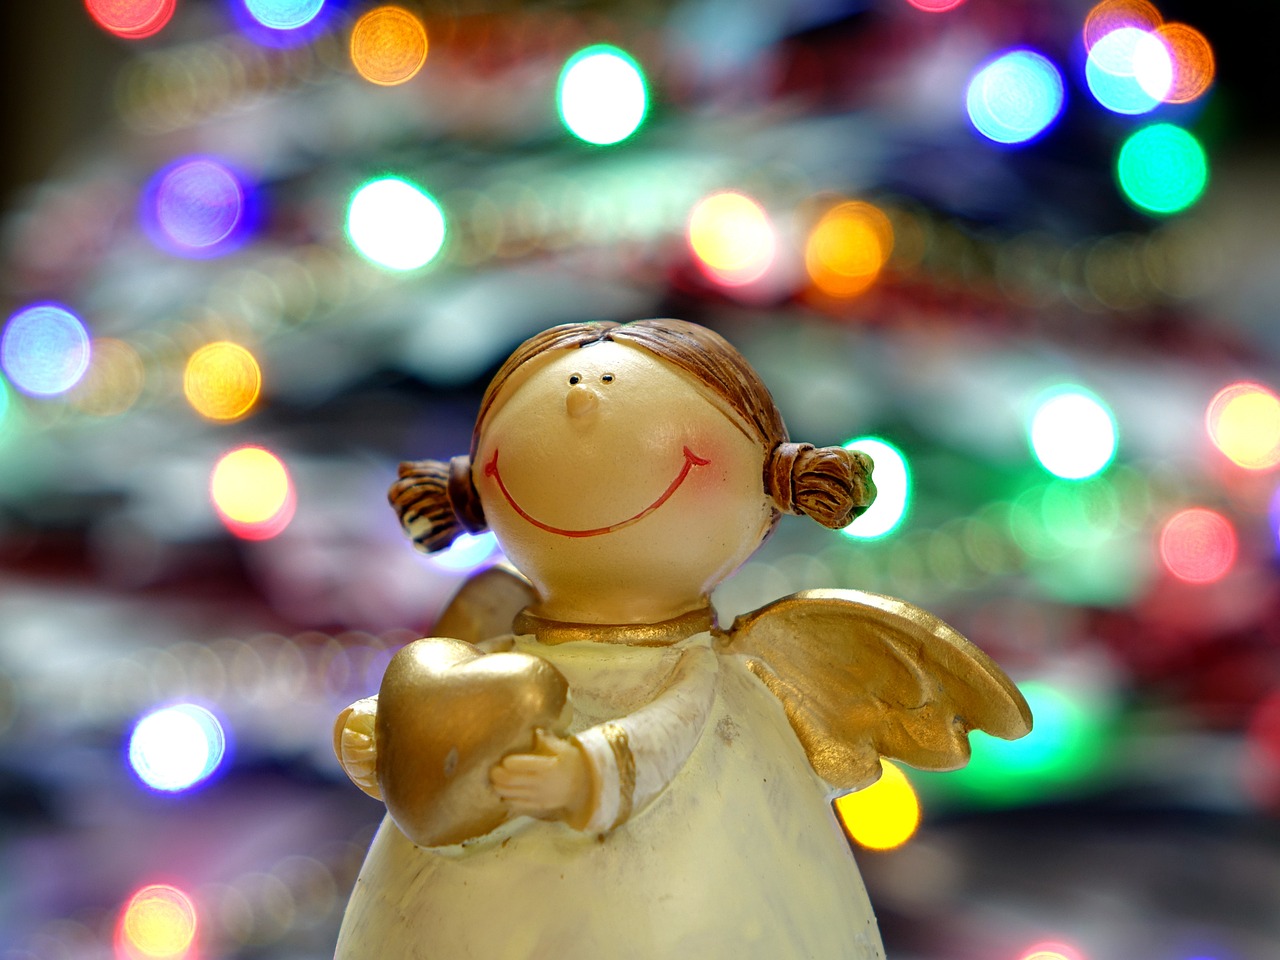 Urări de Crăciun pentru prieteni și apropiați. FOTO: Pixabay